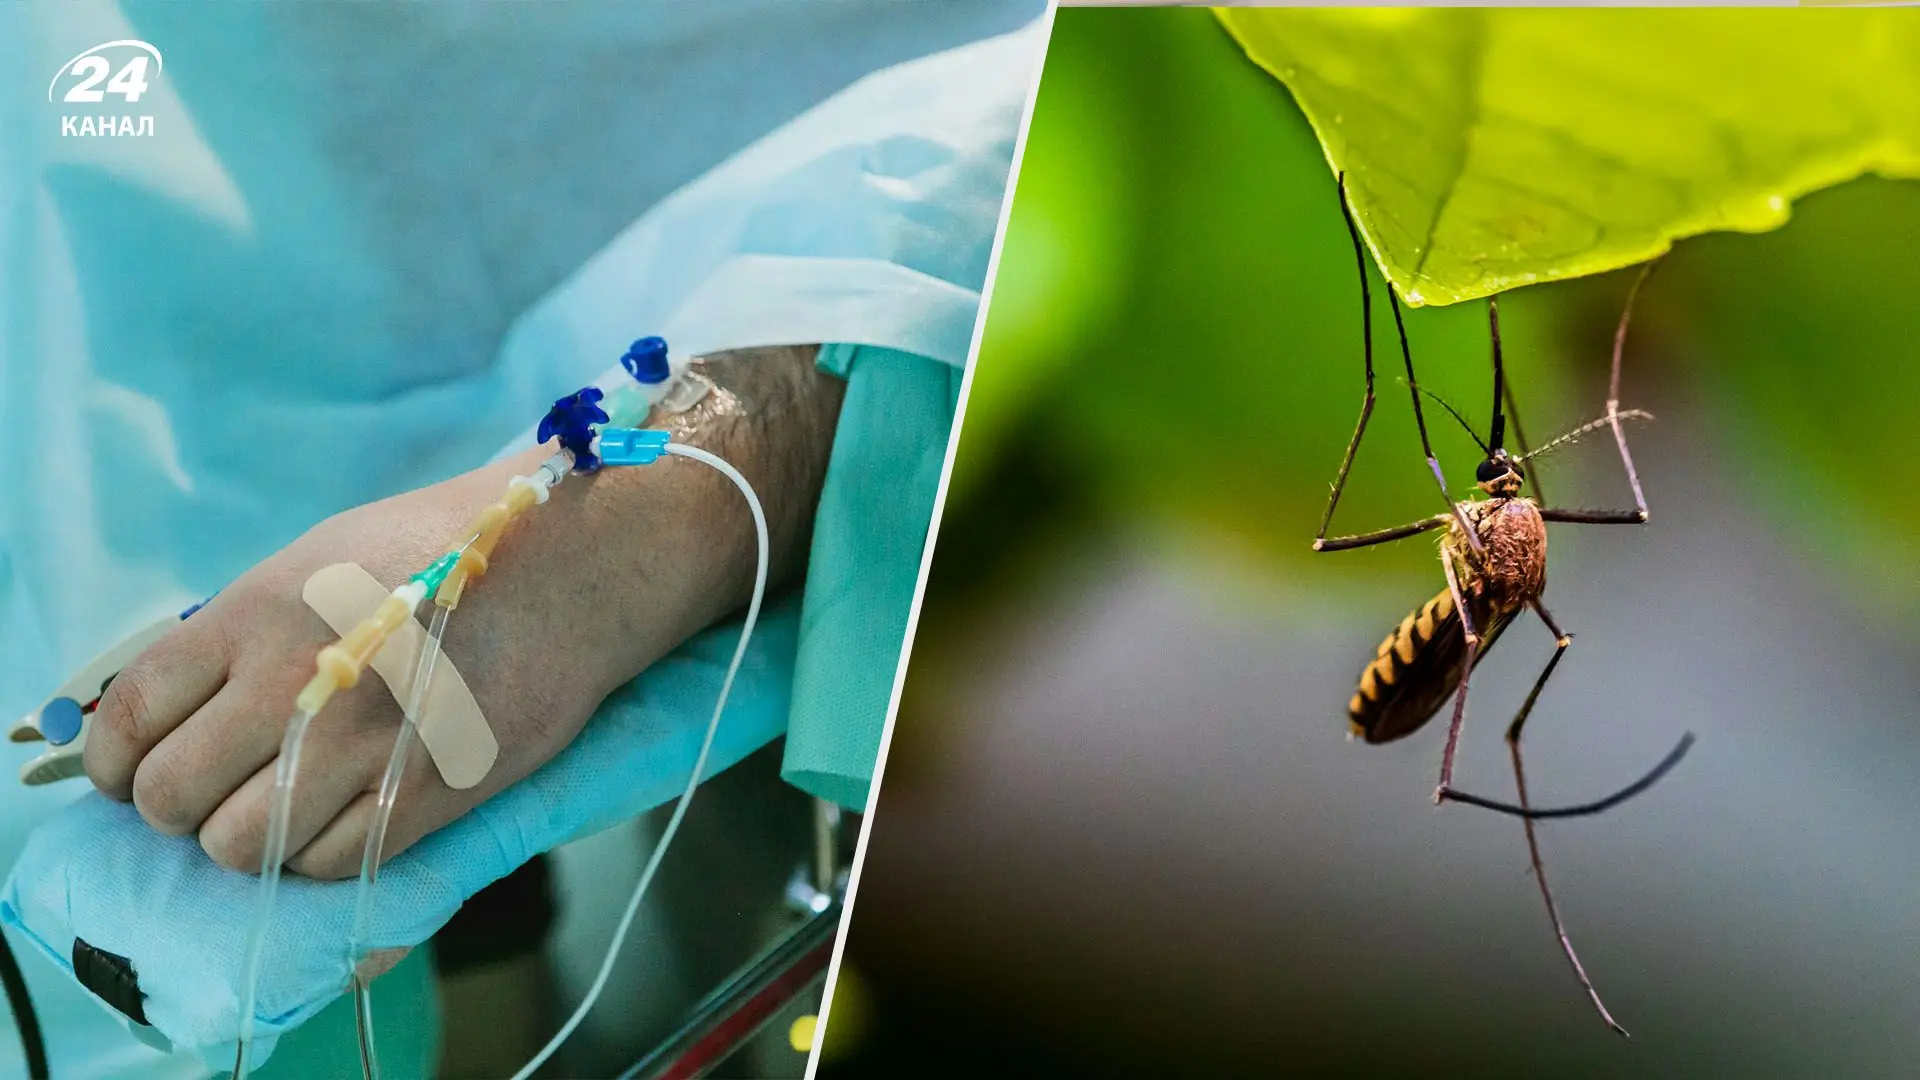 Хвороби, які передаються через укуси комарів, швидко поширюються в Україні. Перші випадки вже були зафіксовані.